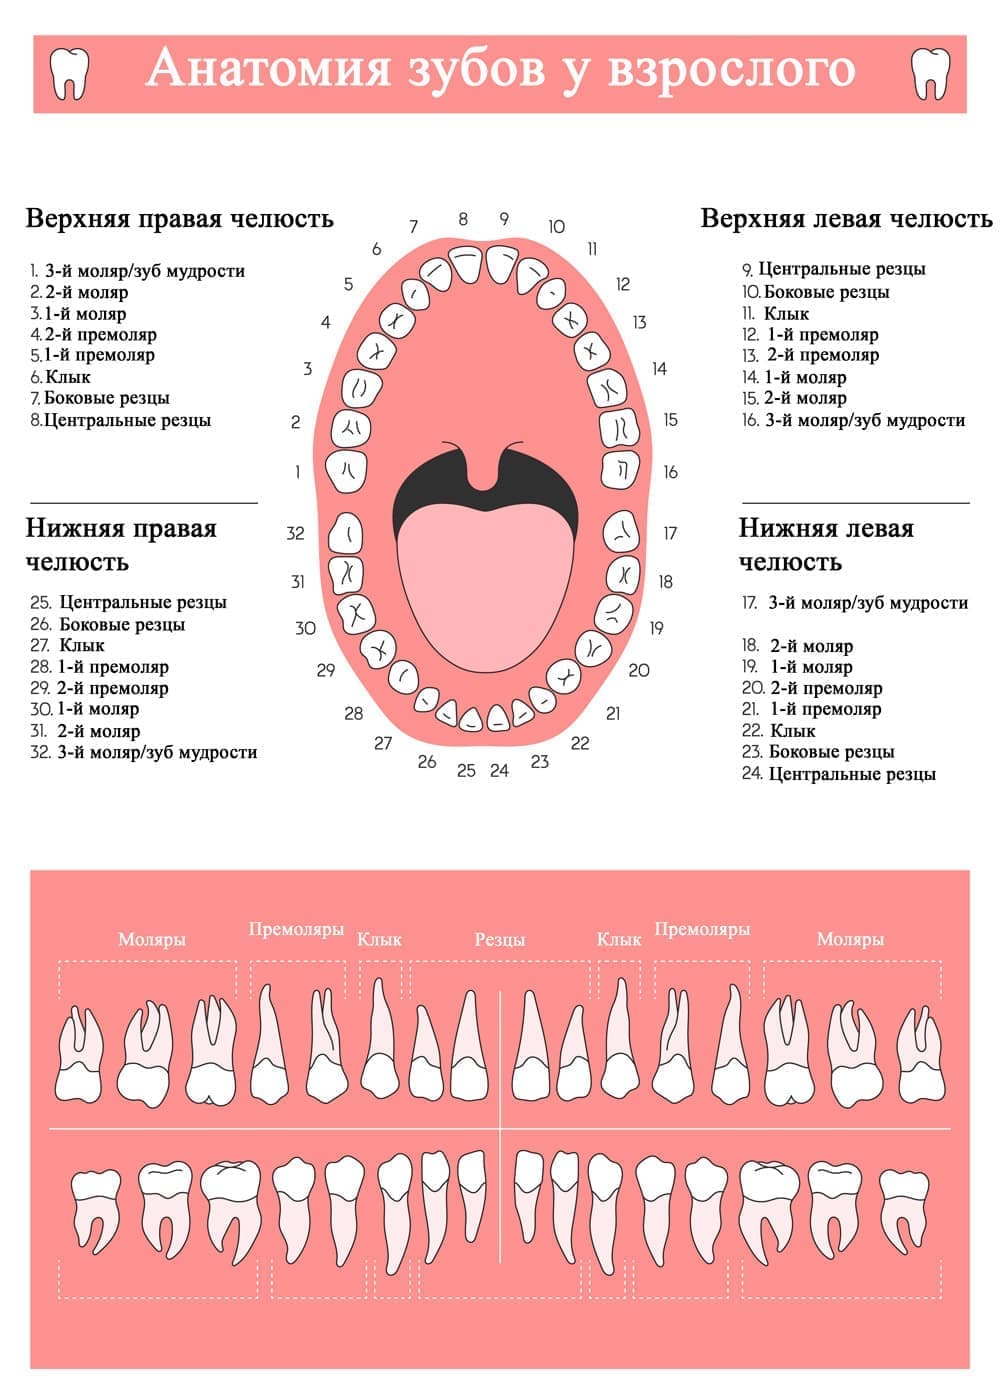 Анатомия зубов взрослого человека: номера и названия зубов верхней и нижней челюсти